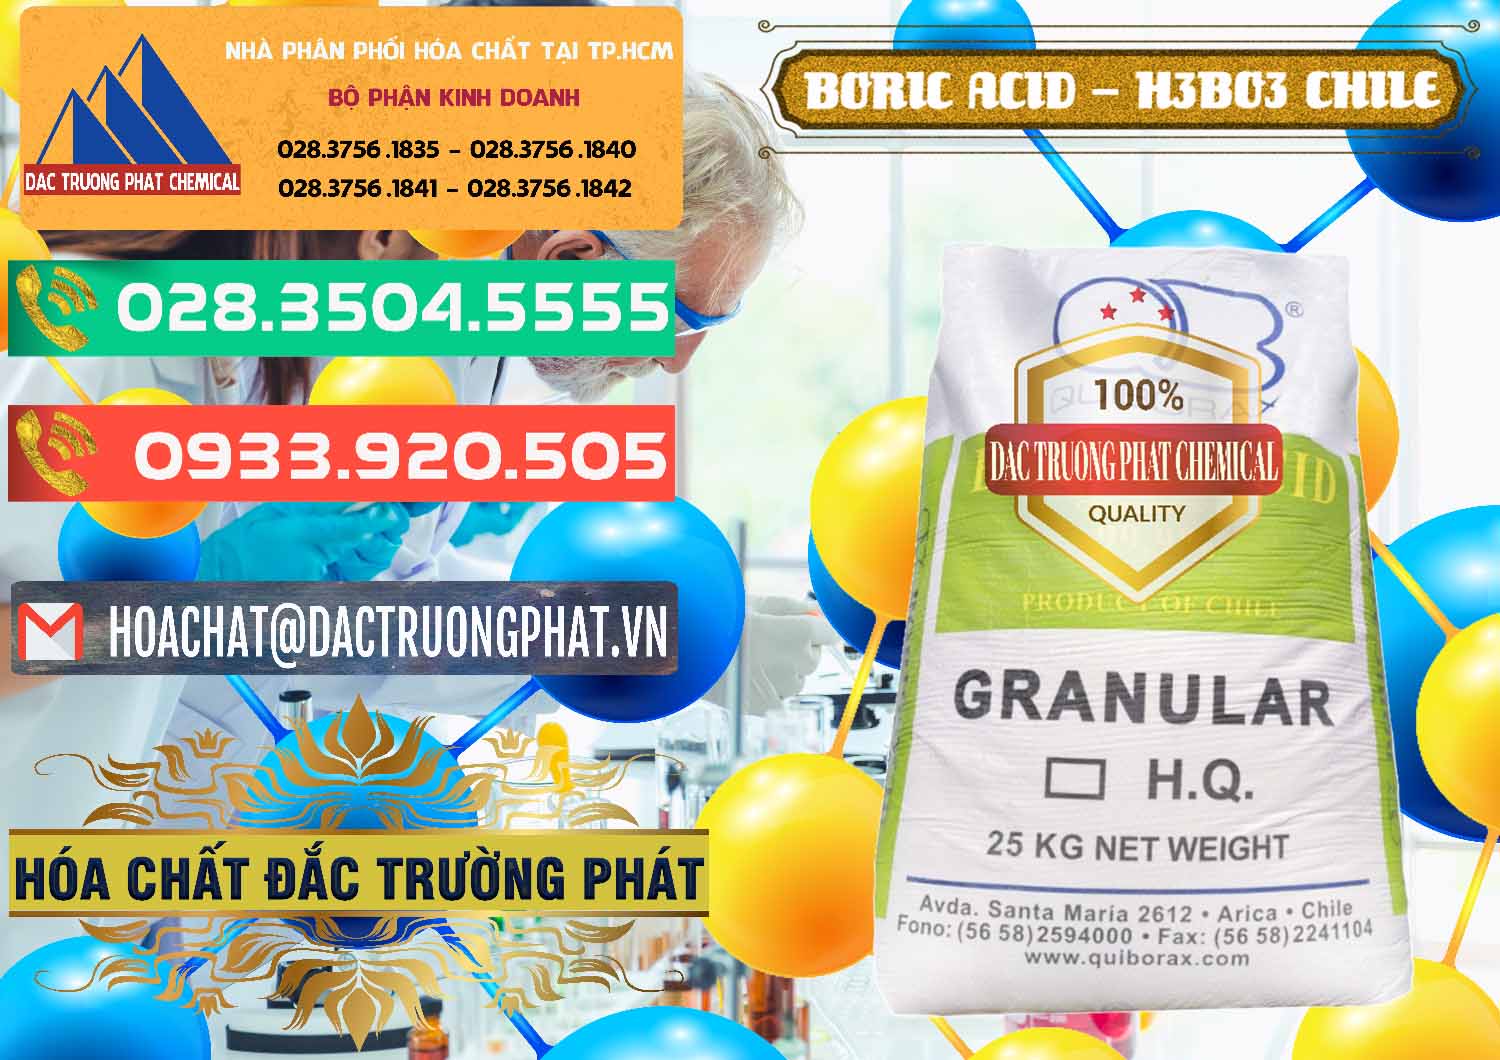 Công ty chuyên kinh doanh _ bán Acid Boric – Axit Boric H3BO3 99% Quiborax Chile - 0281 - Công ty chuyên cung cấp và kinh doanh hóa chất tại TP.HCM - congtyhoachat.com.vn